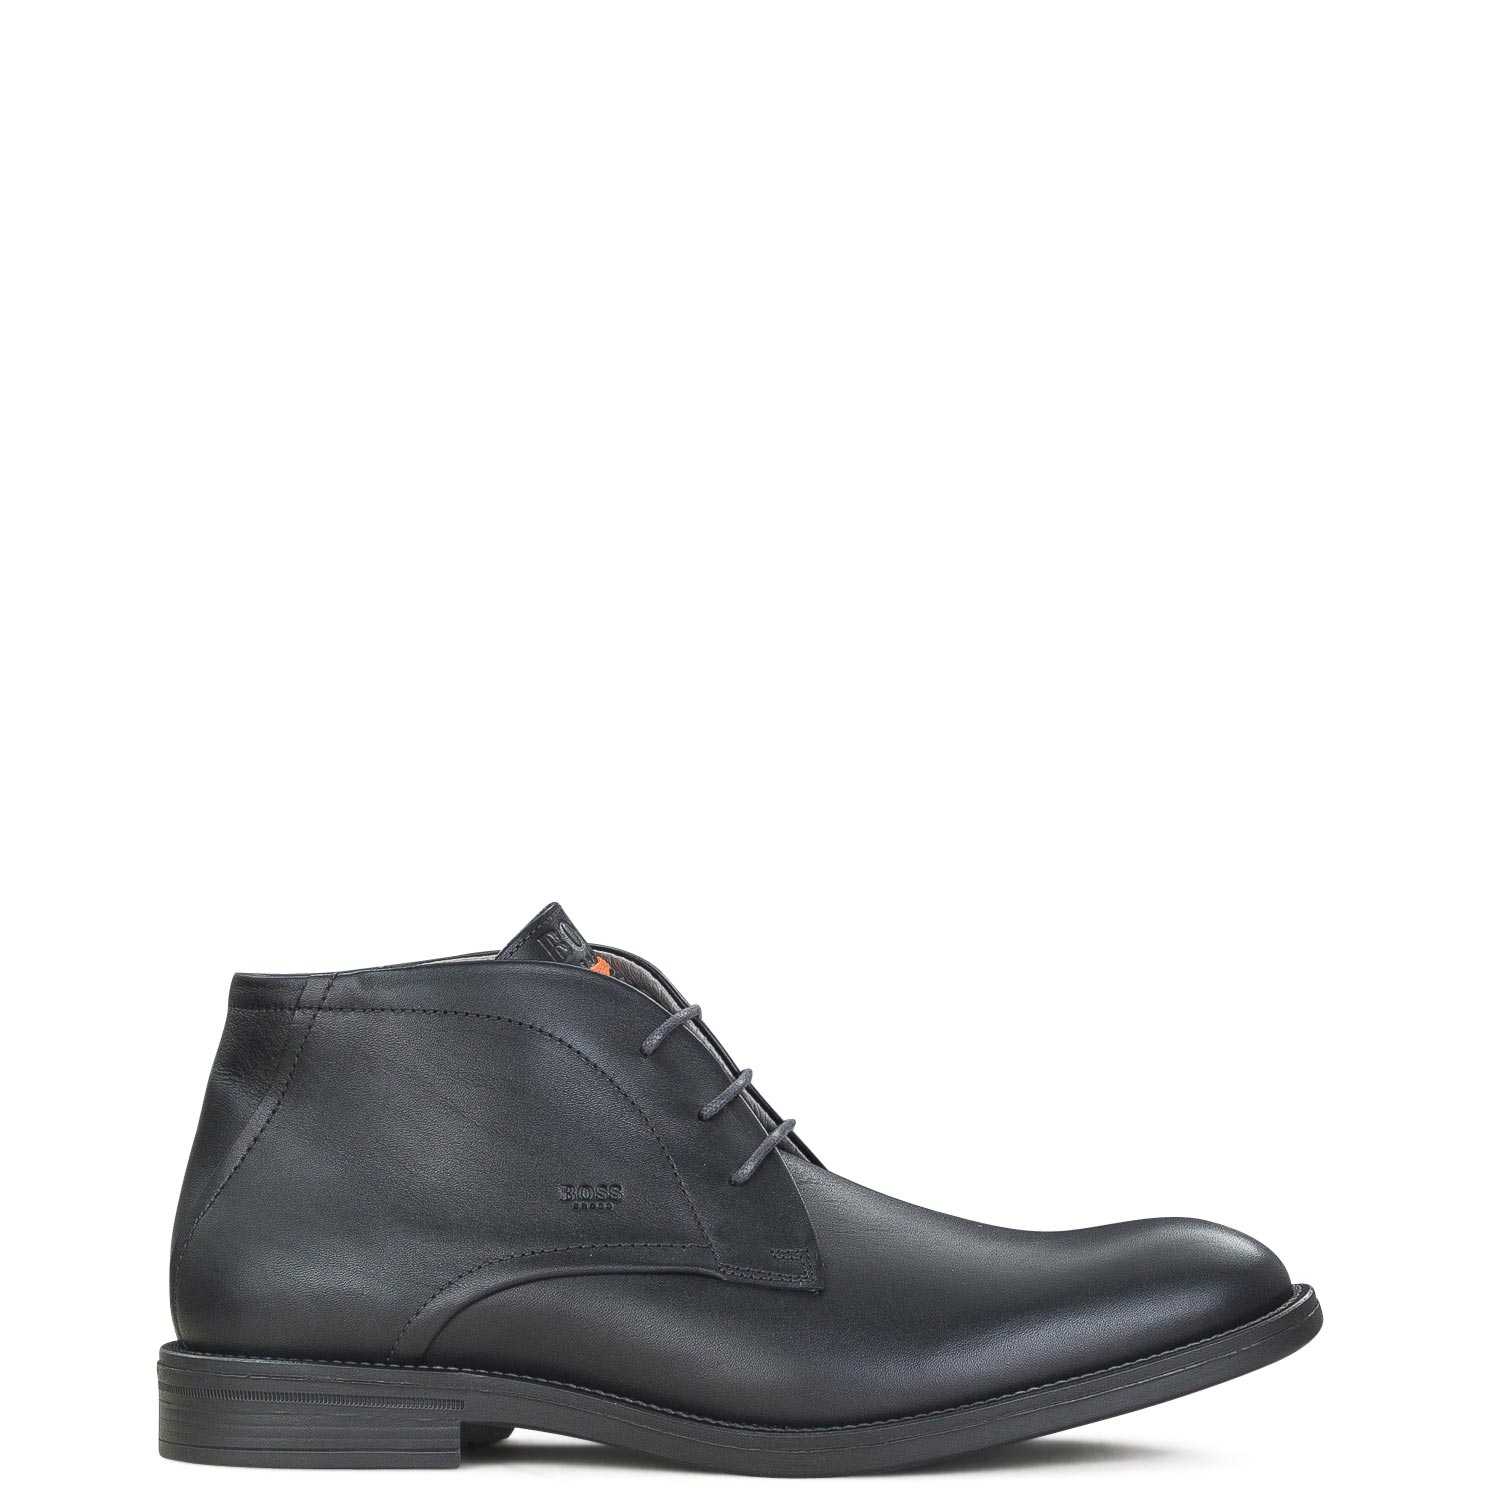 Υποδήματα - Μπότες Μποτάκια Μπότες Μποτάκια ανδρικές Boss Shoes Μαύρο PQ112